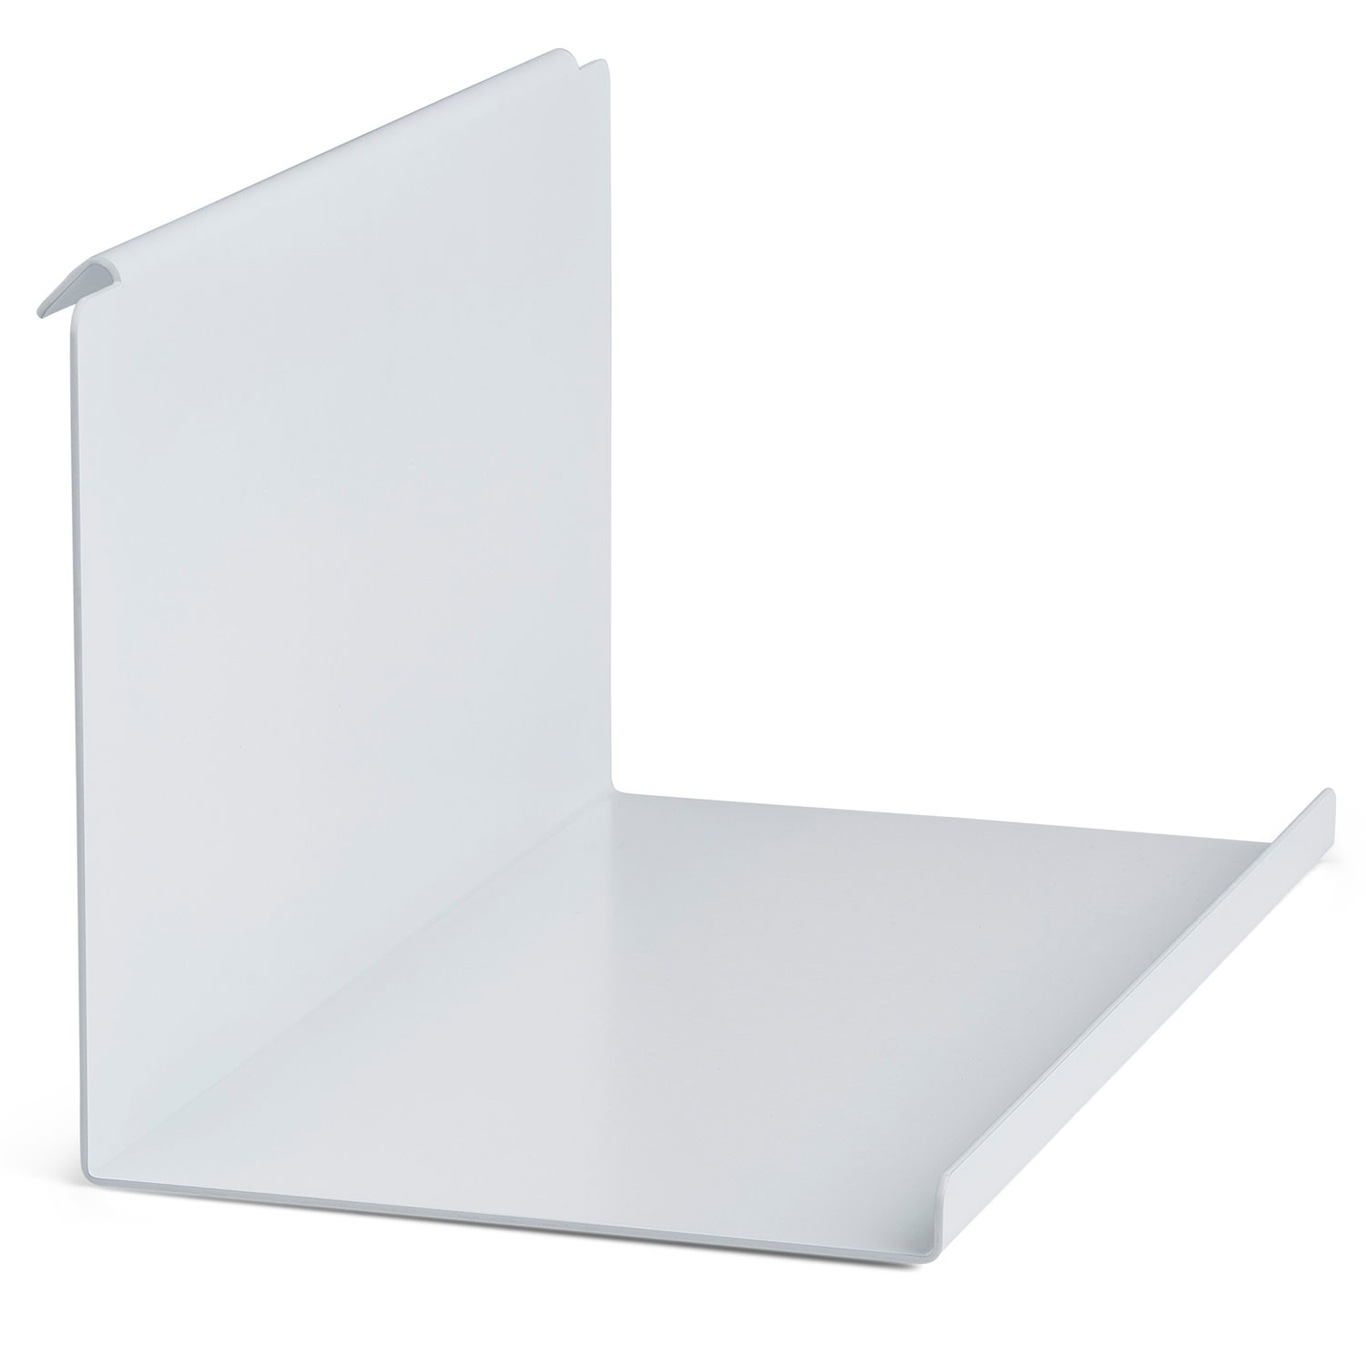 Flex Side Table For Magnetic Shelf, White